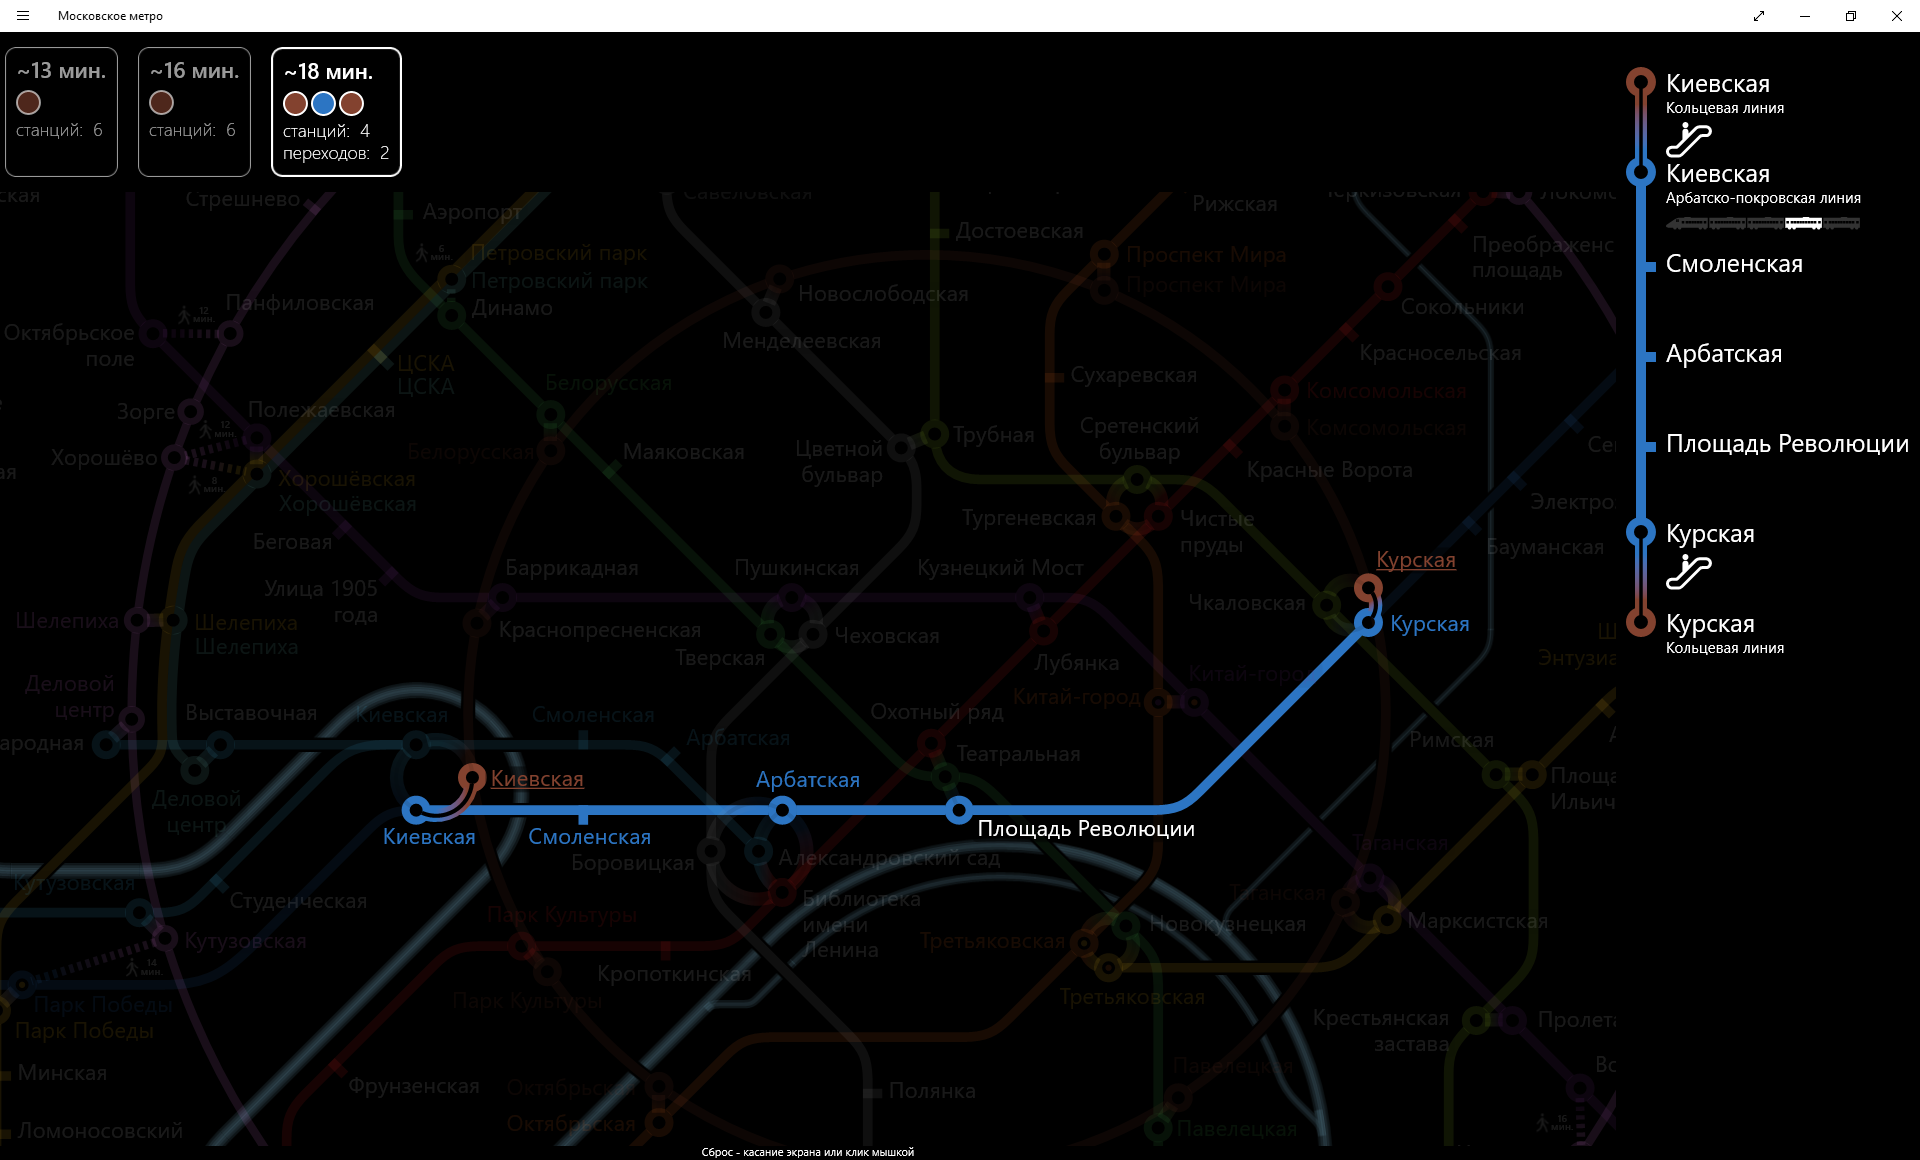 Приложение Московское метро для Windows Store - 7